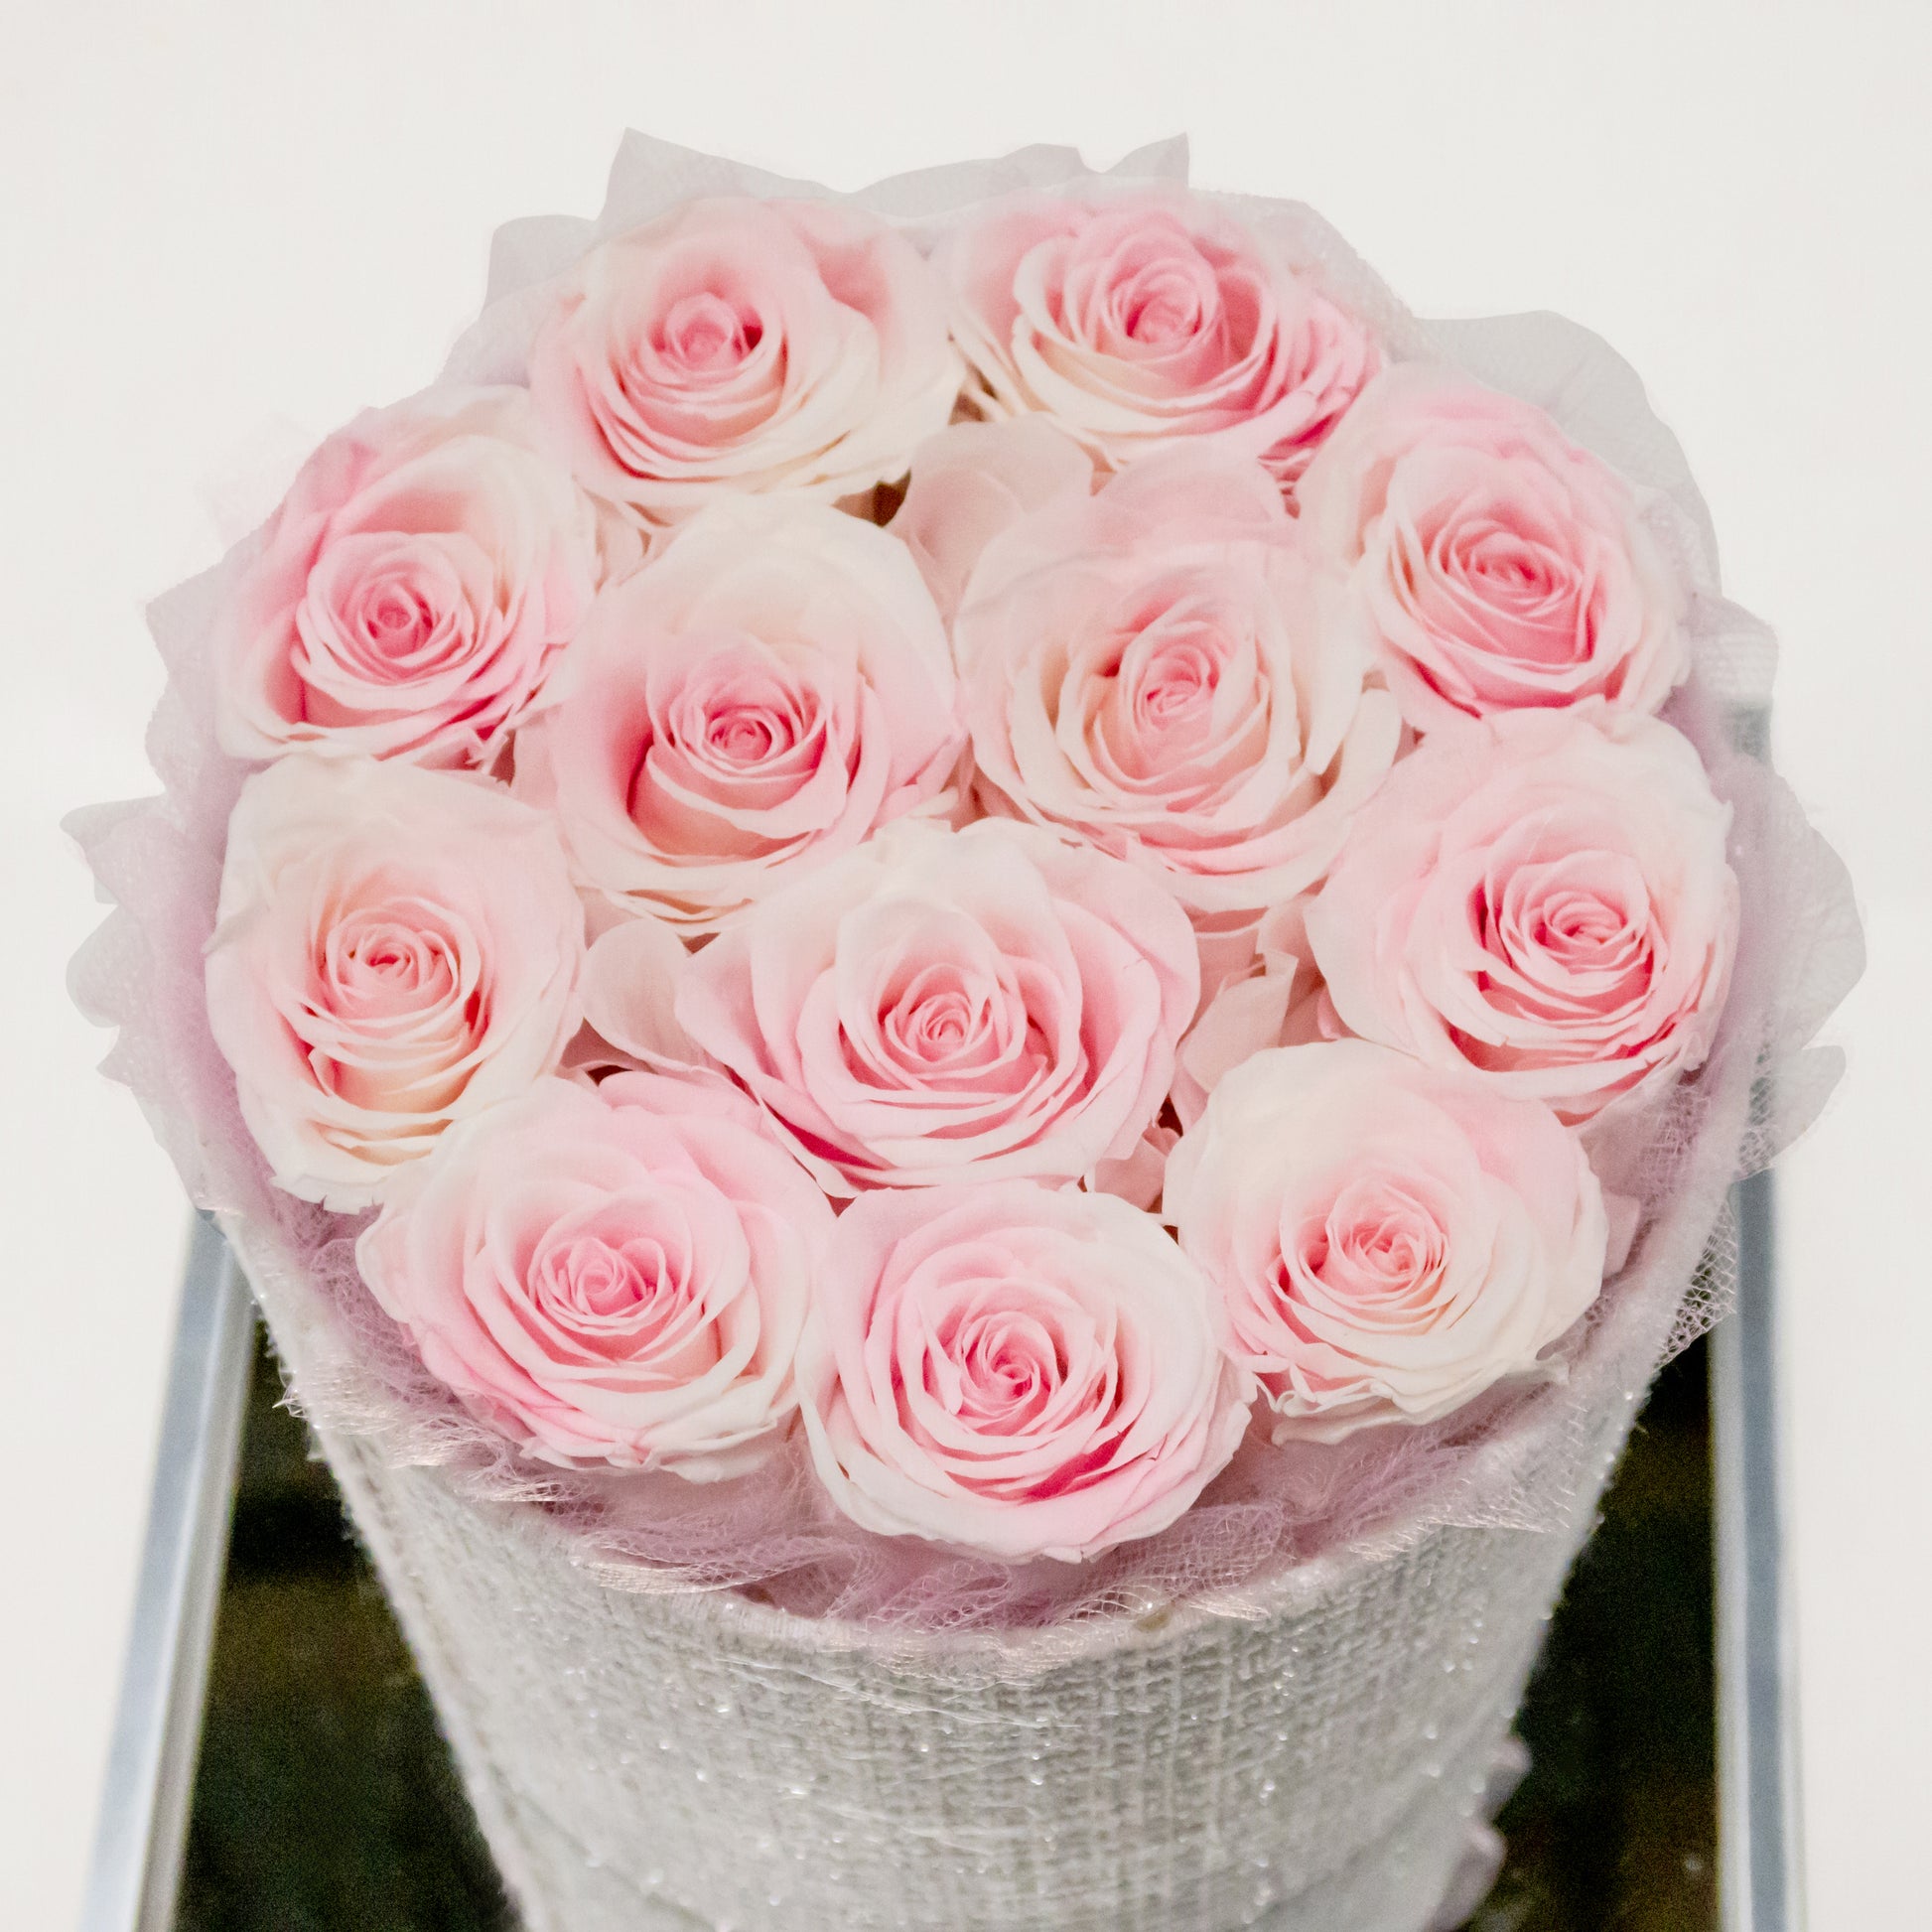 Tender Loving Care - Preserved Roses